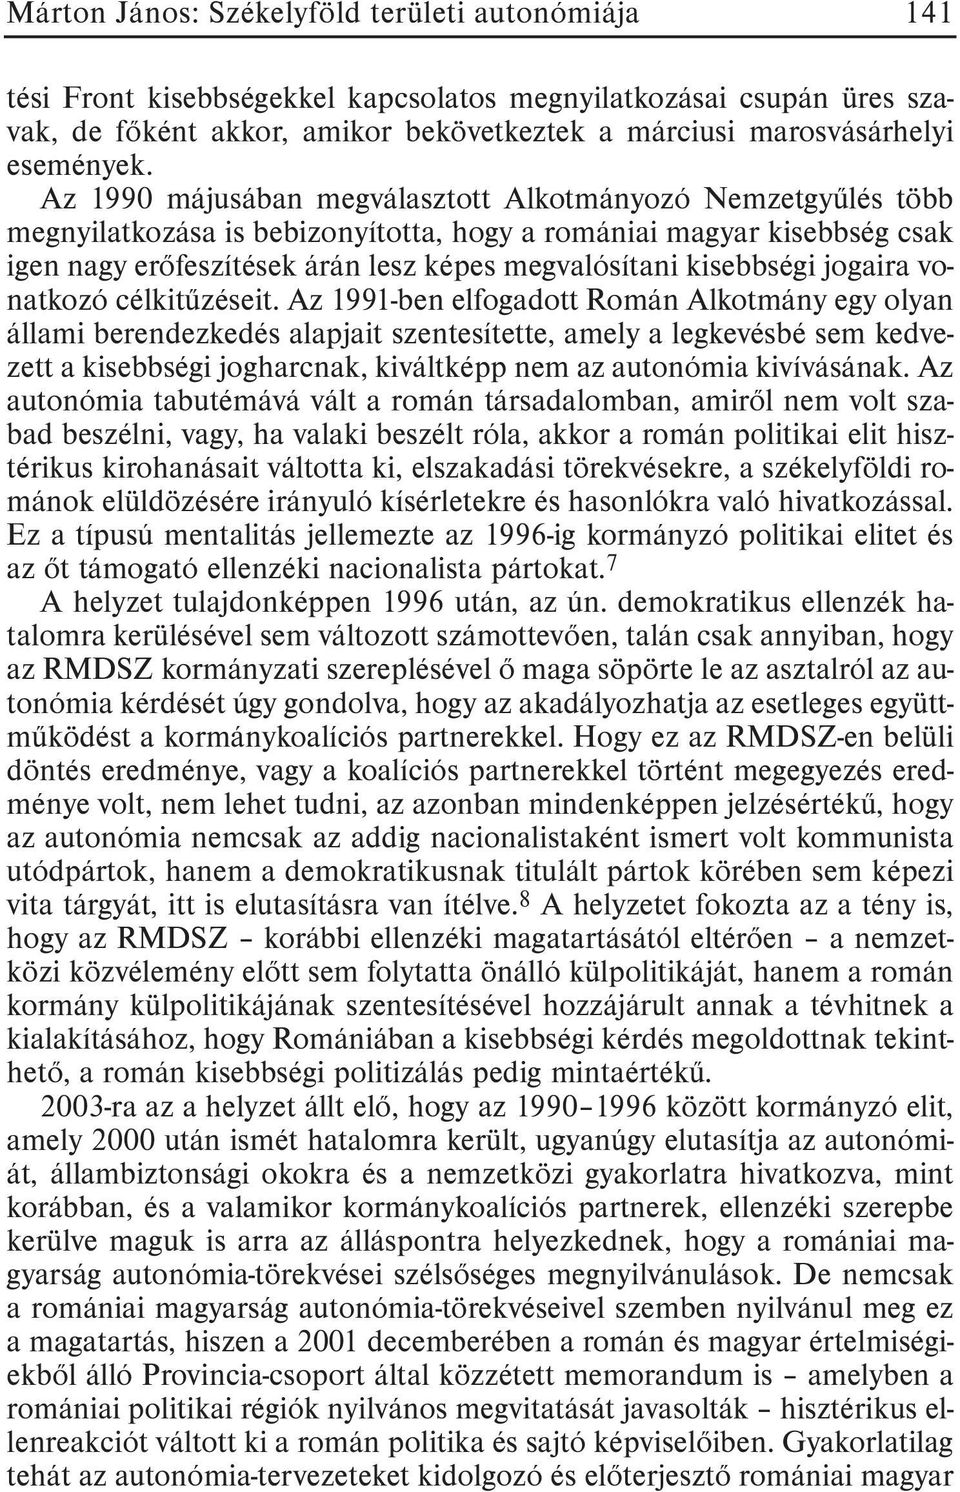 Az 1990 májusában megválasztott Alkotmányozó Nemzetgyûlés több megnyilatkozása is bebizonyította, hogy a romániai magyar kisebbség csak igen nagy erõfeszítések árán lesz képes megvalósítani